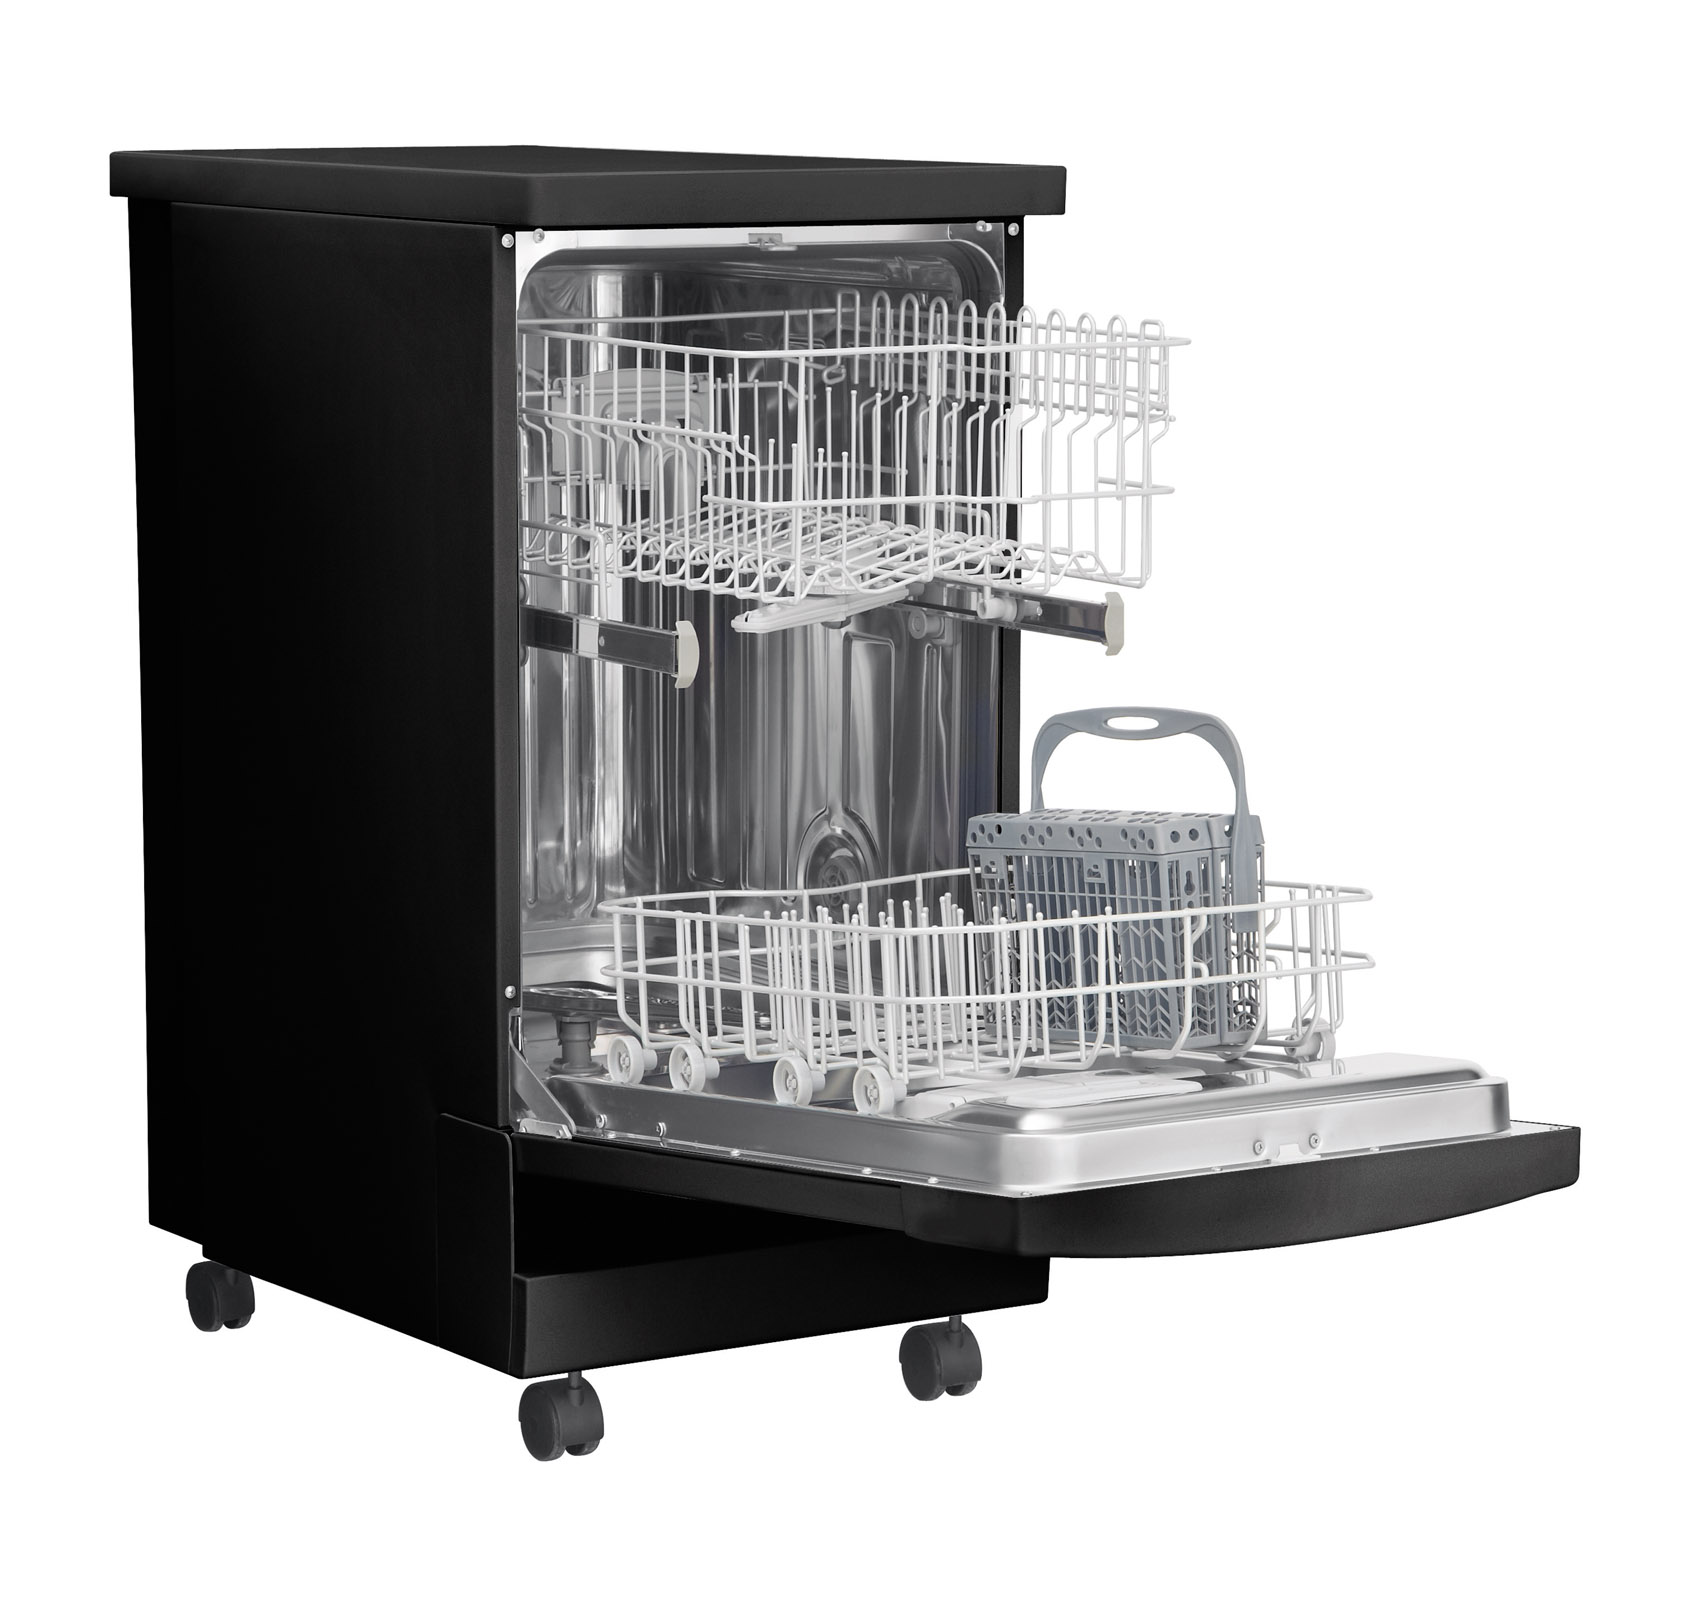 frigidaire 18 portable dishwasher